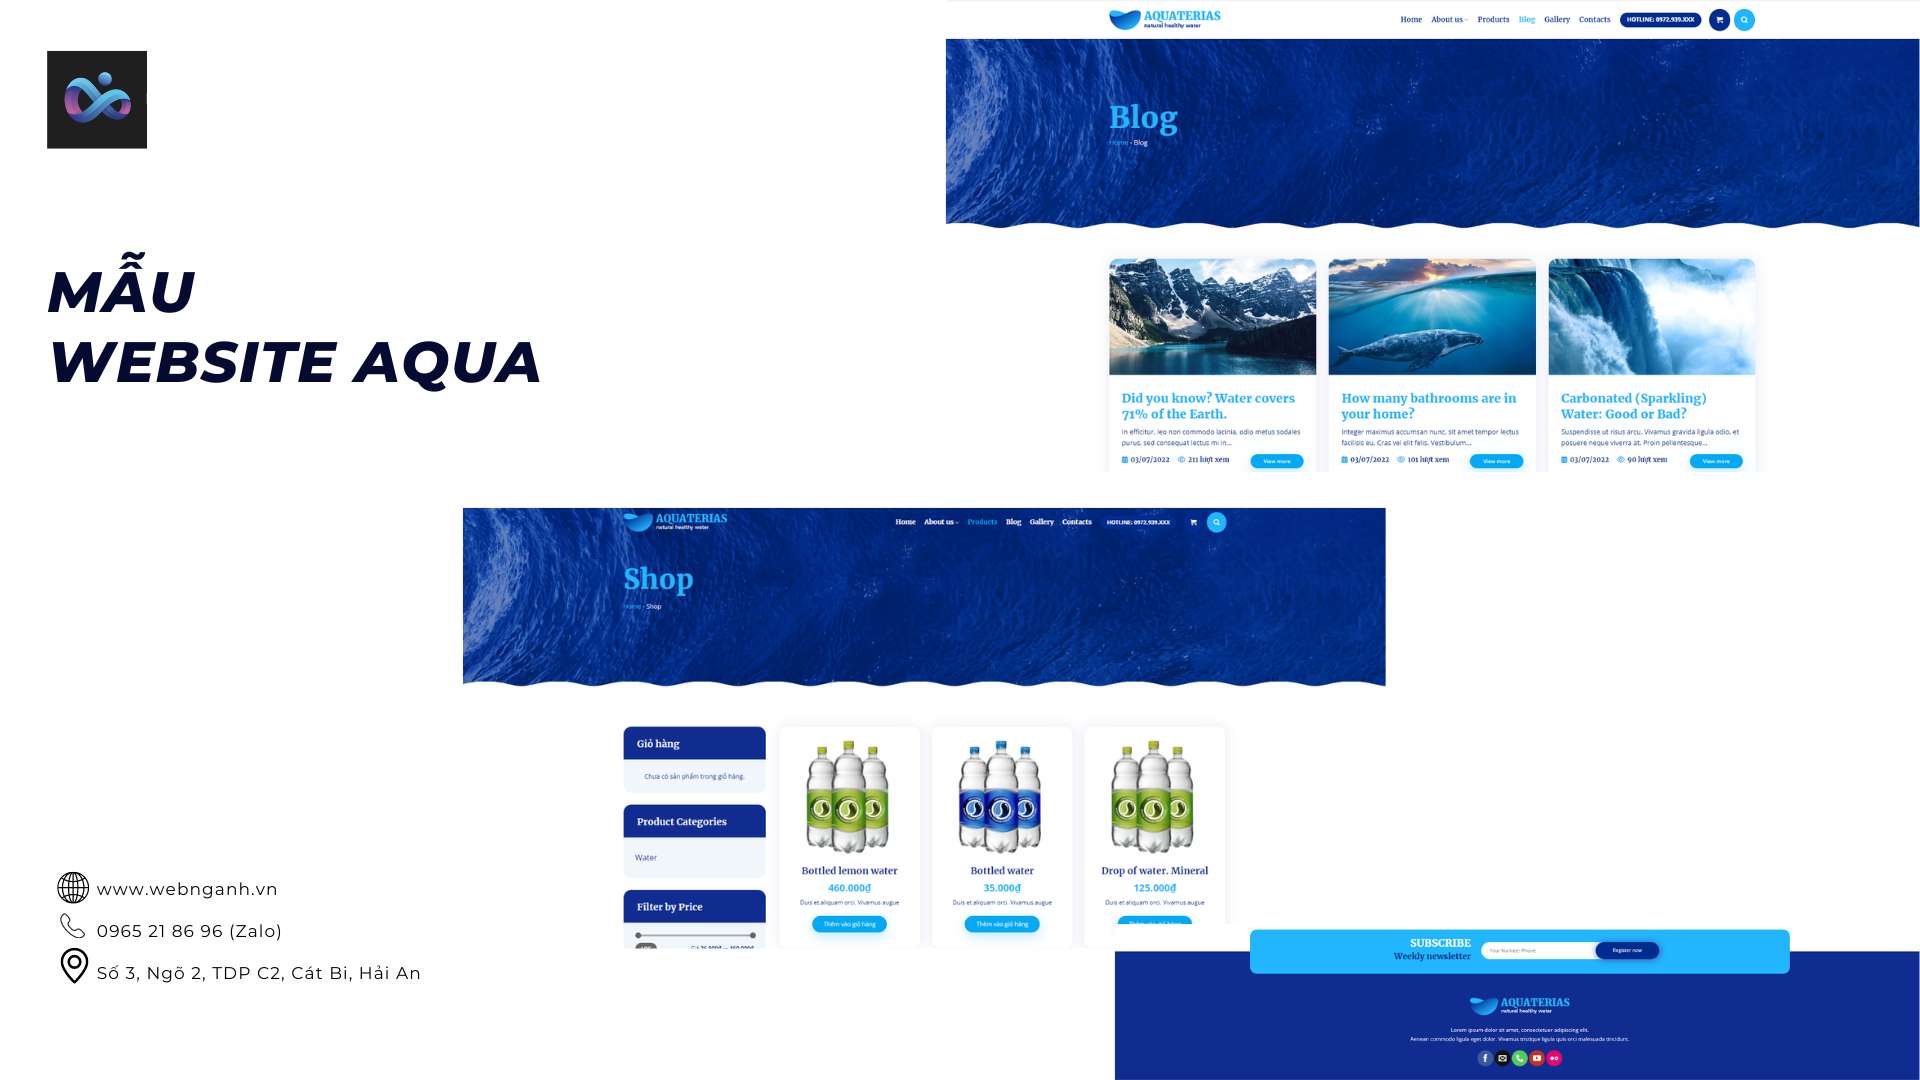 Mẫu website bán nước aqua